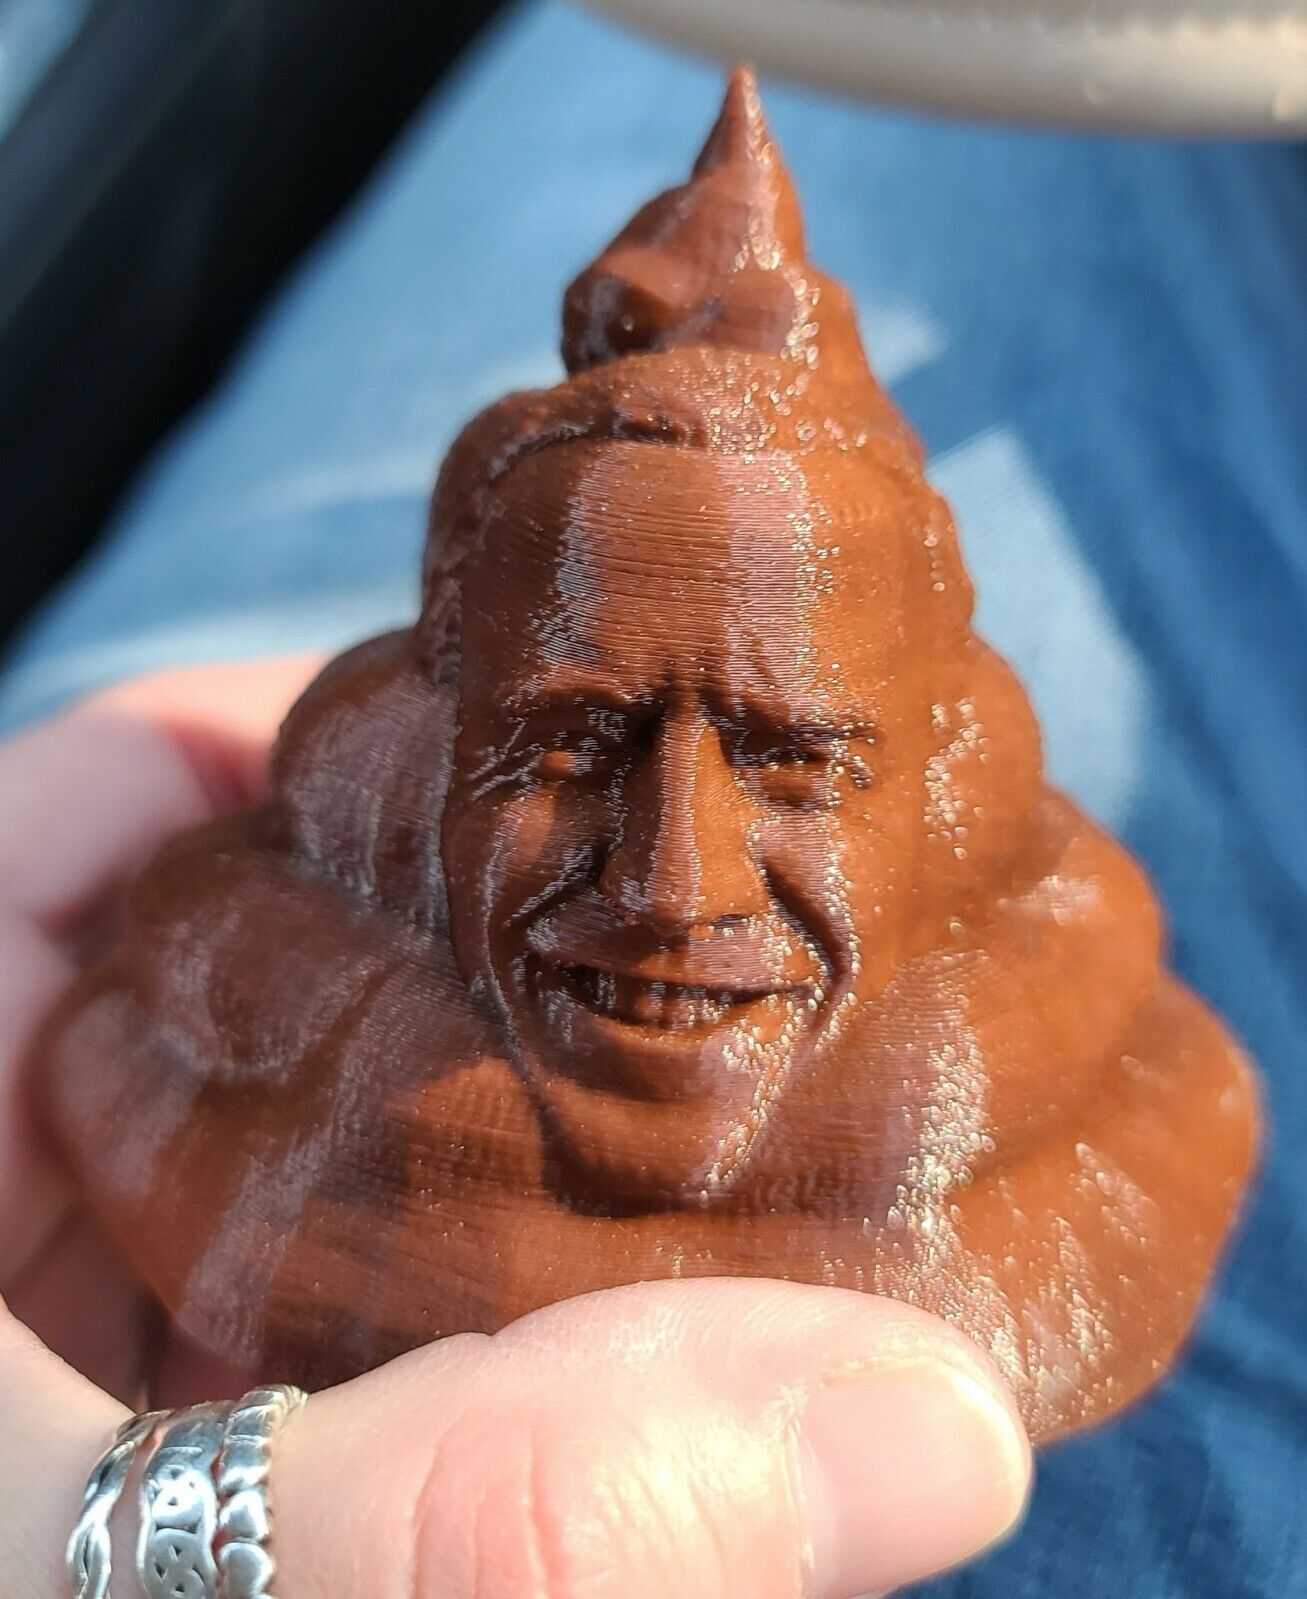 Joe Biden Poo 3D Printed President Turd FJB Lets Go Brandon